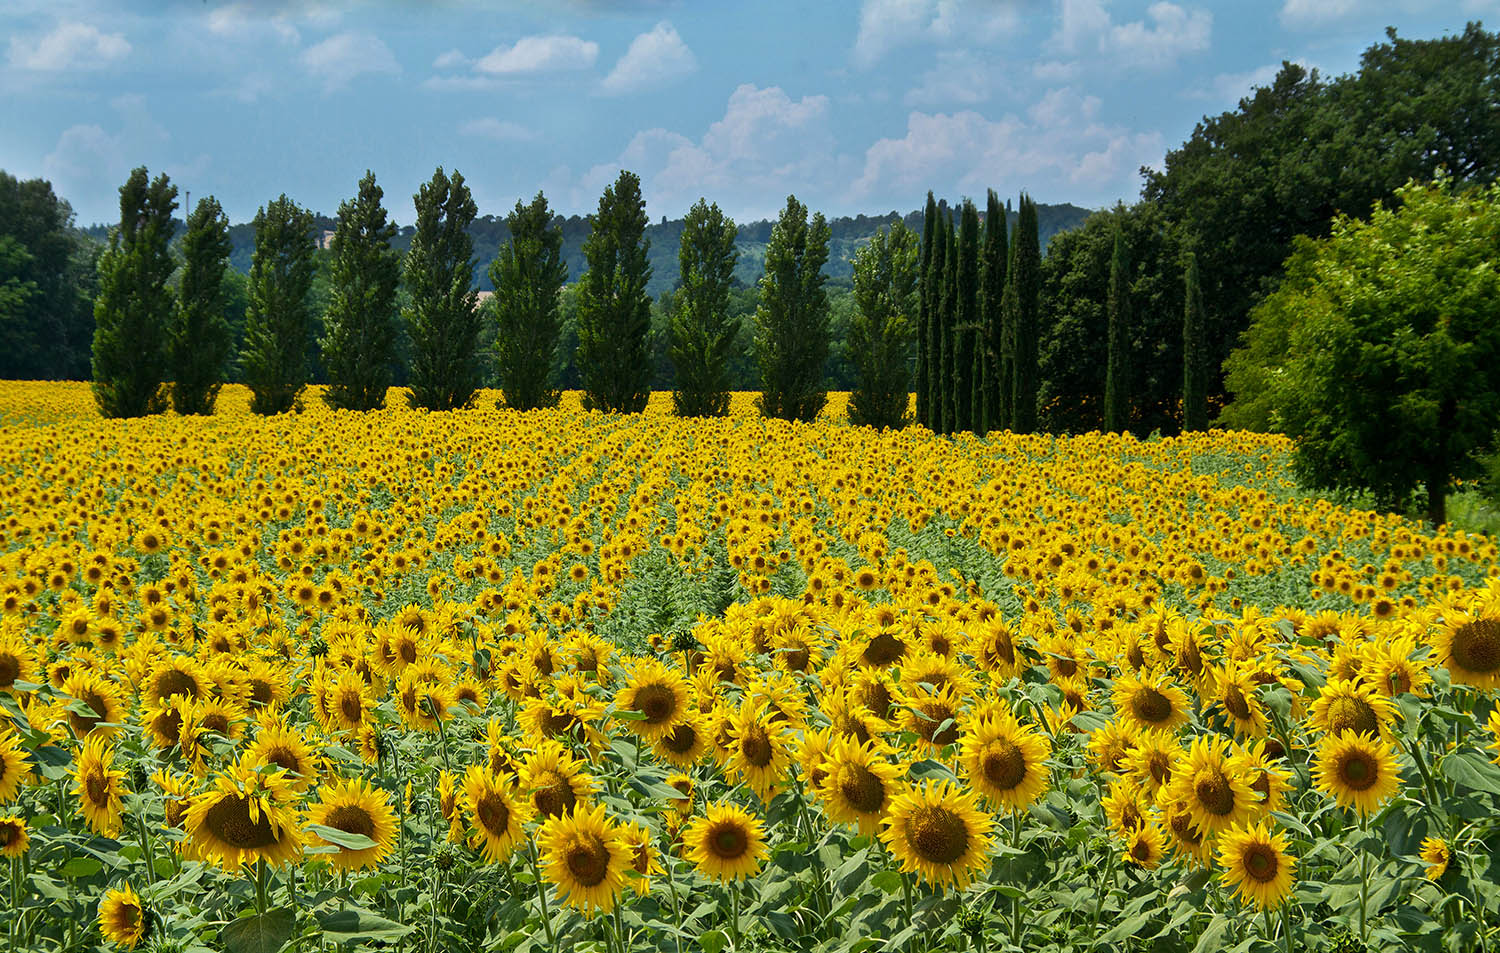 Die Maremma-Region in der Toskana ist weltberühmt für ihre unendlichen Sonnenblumenfelder. Eine Lustfahrt entlang der Küstenregion, rund um Siena etwa, offenbart strahlende gelbe Köpfchen, die den Vorbeifahrenden in der Brise zunicken. 
